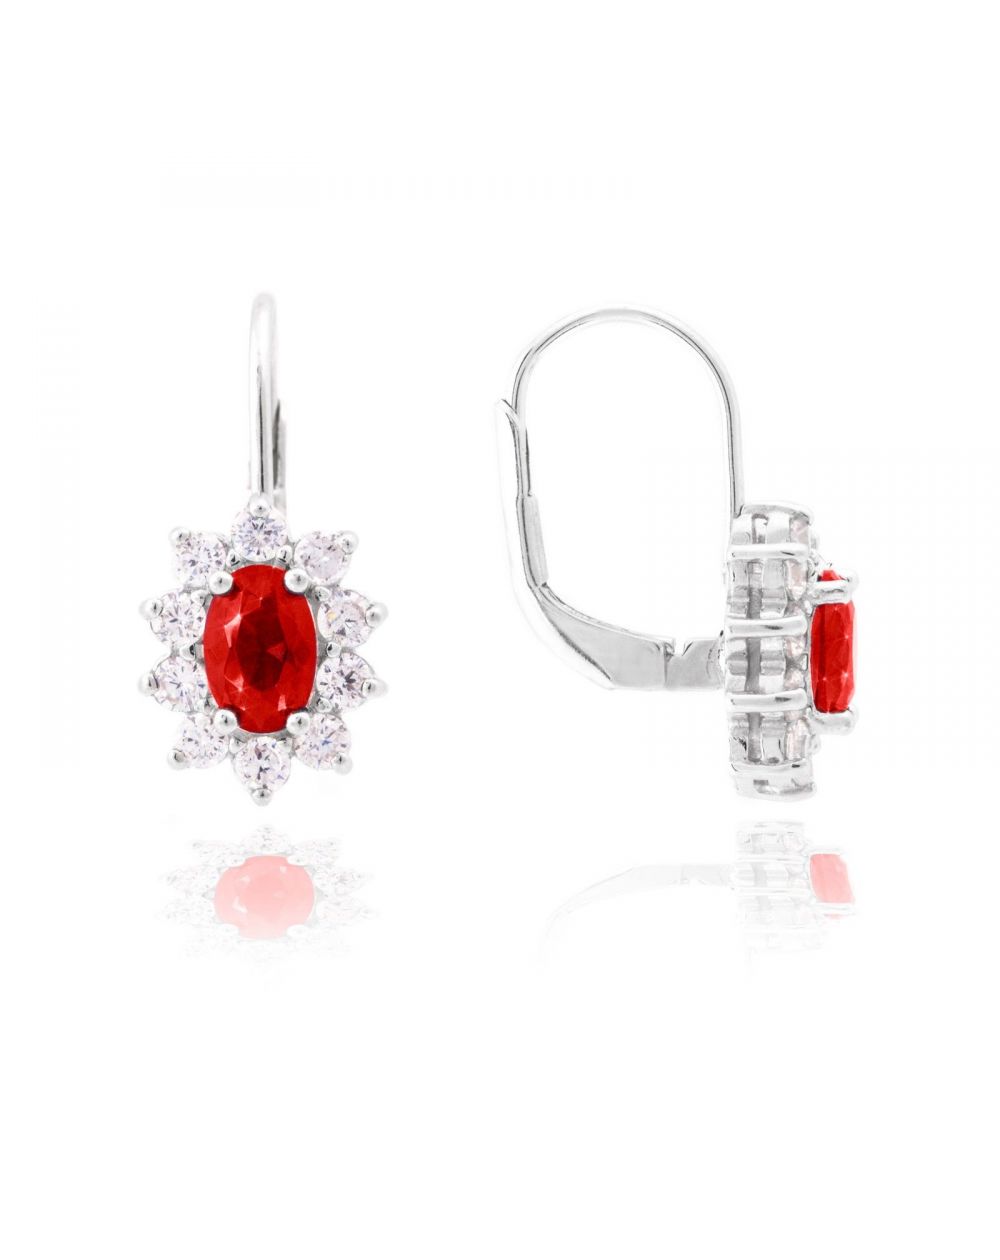 Dormeuses Diana rouge rubis - Bijoux en argent - Boucles d'oreilles